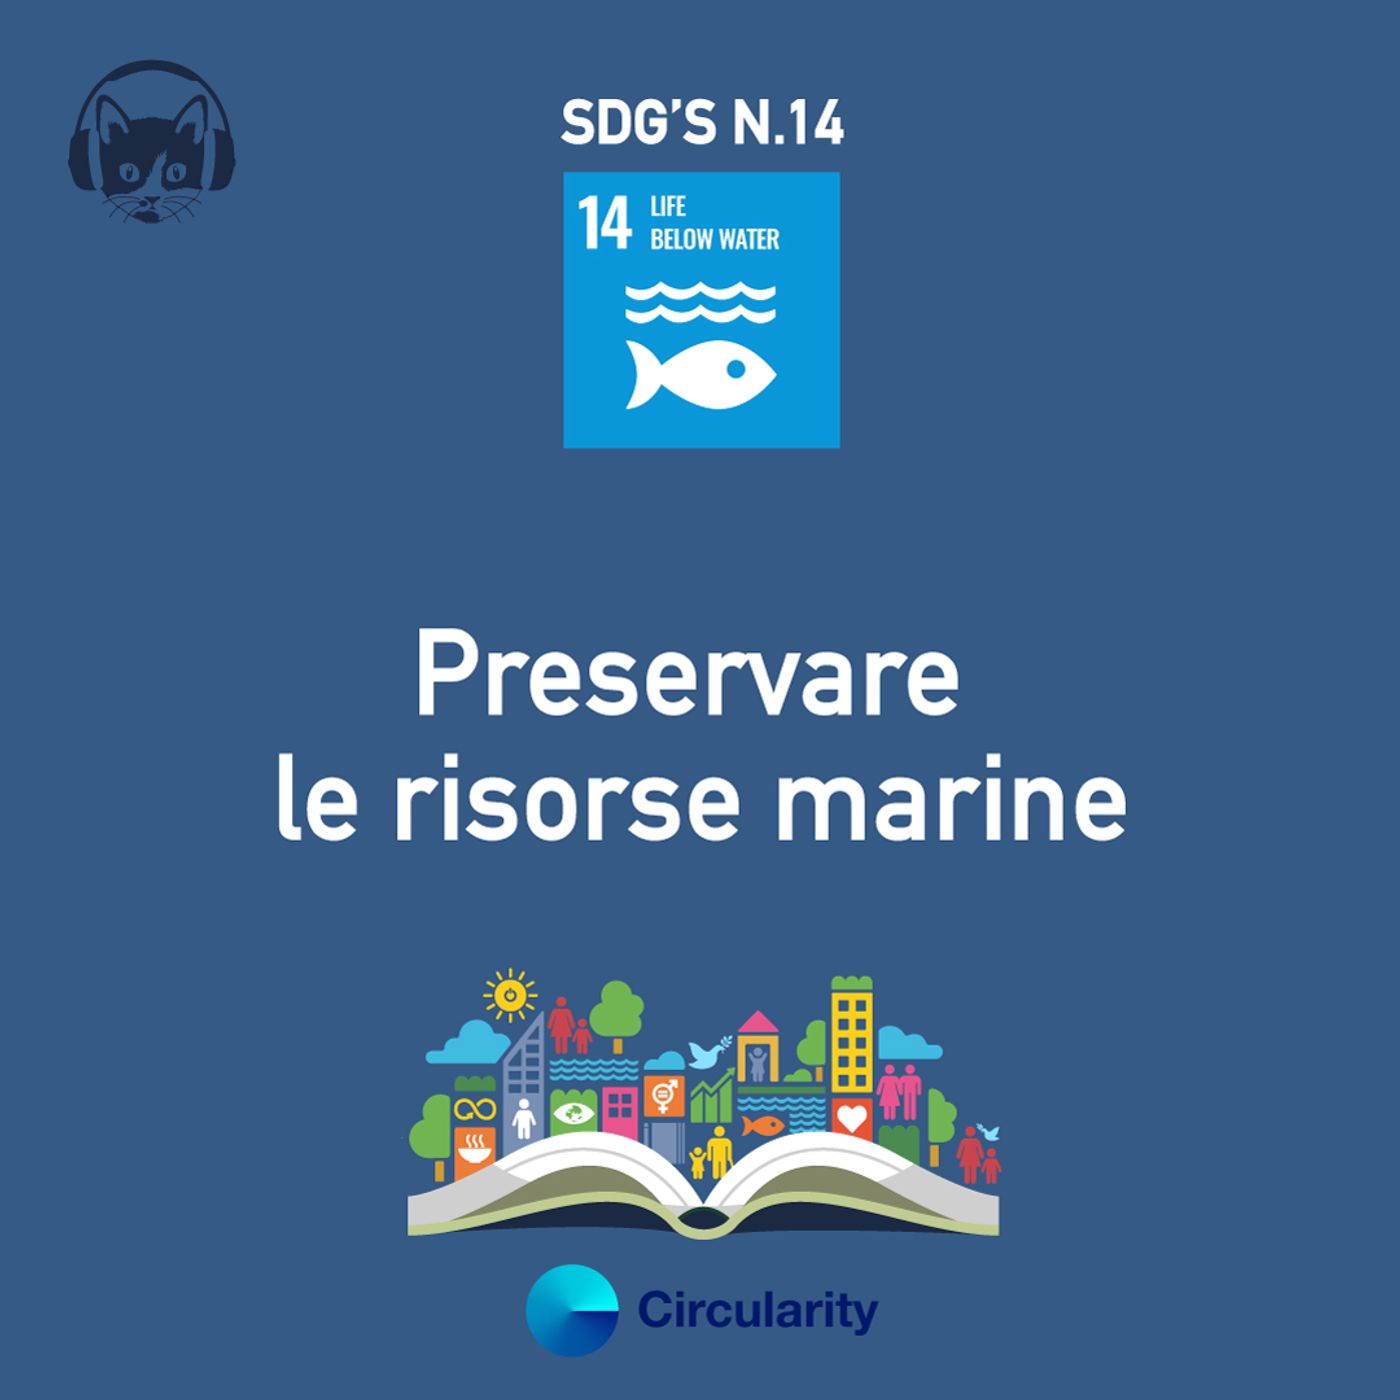 14. Preservare le risorse marine